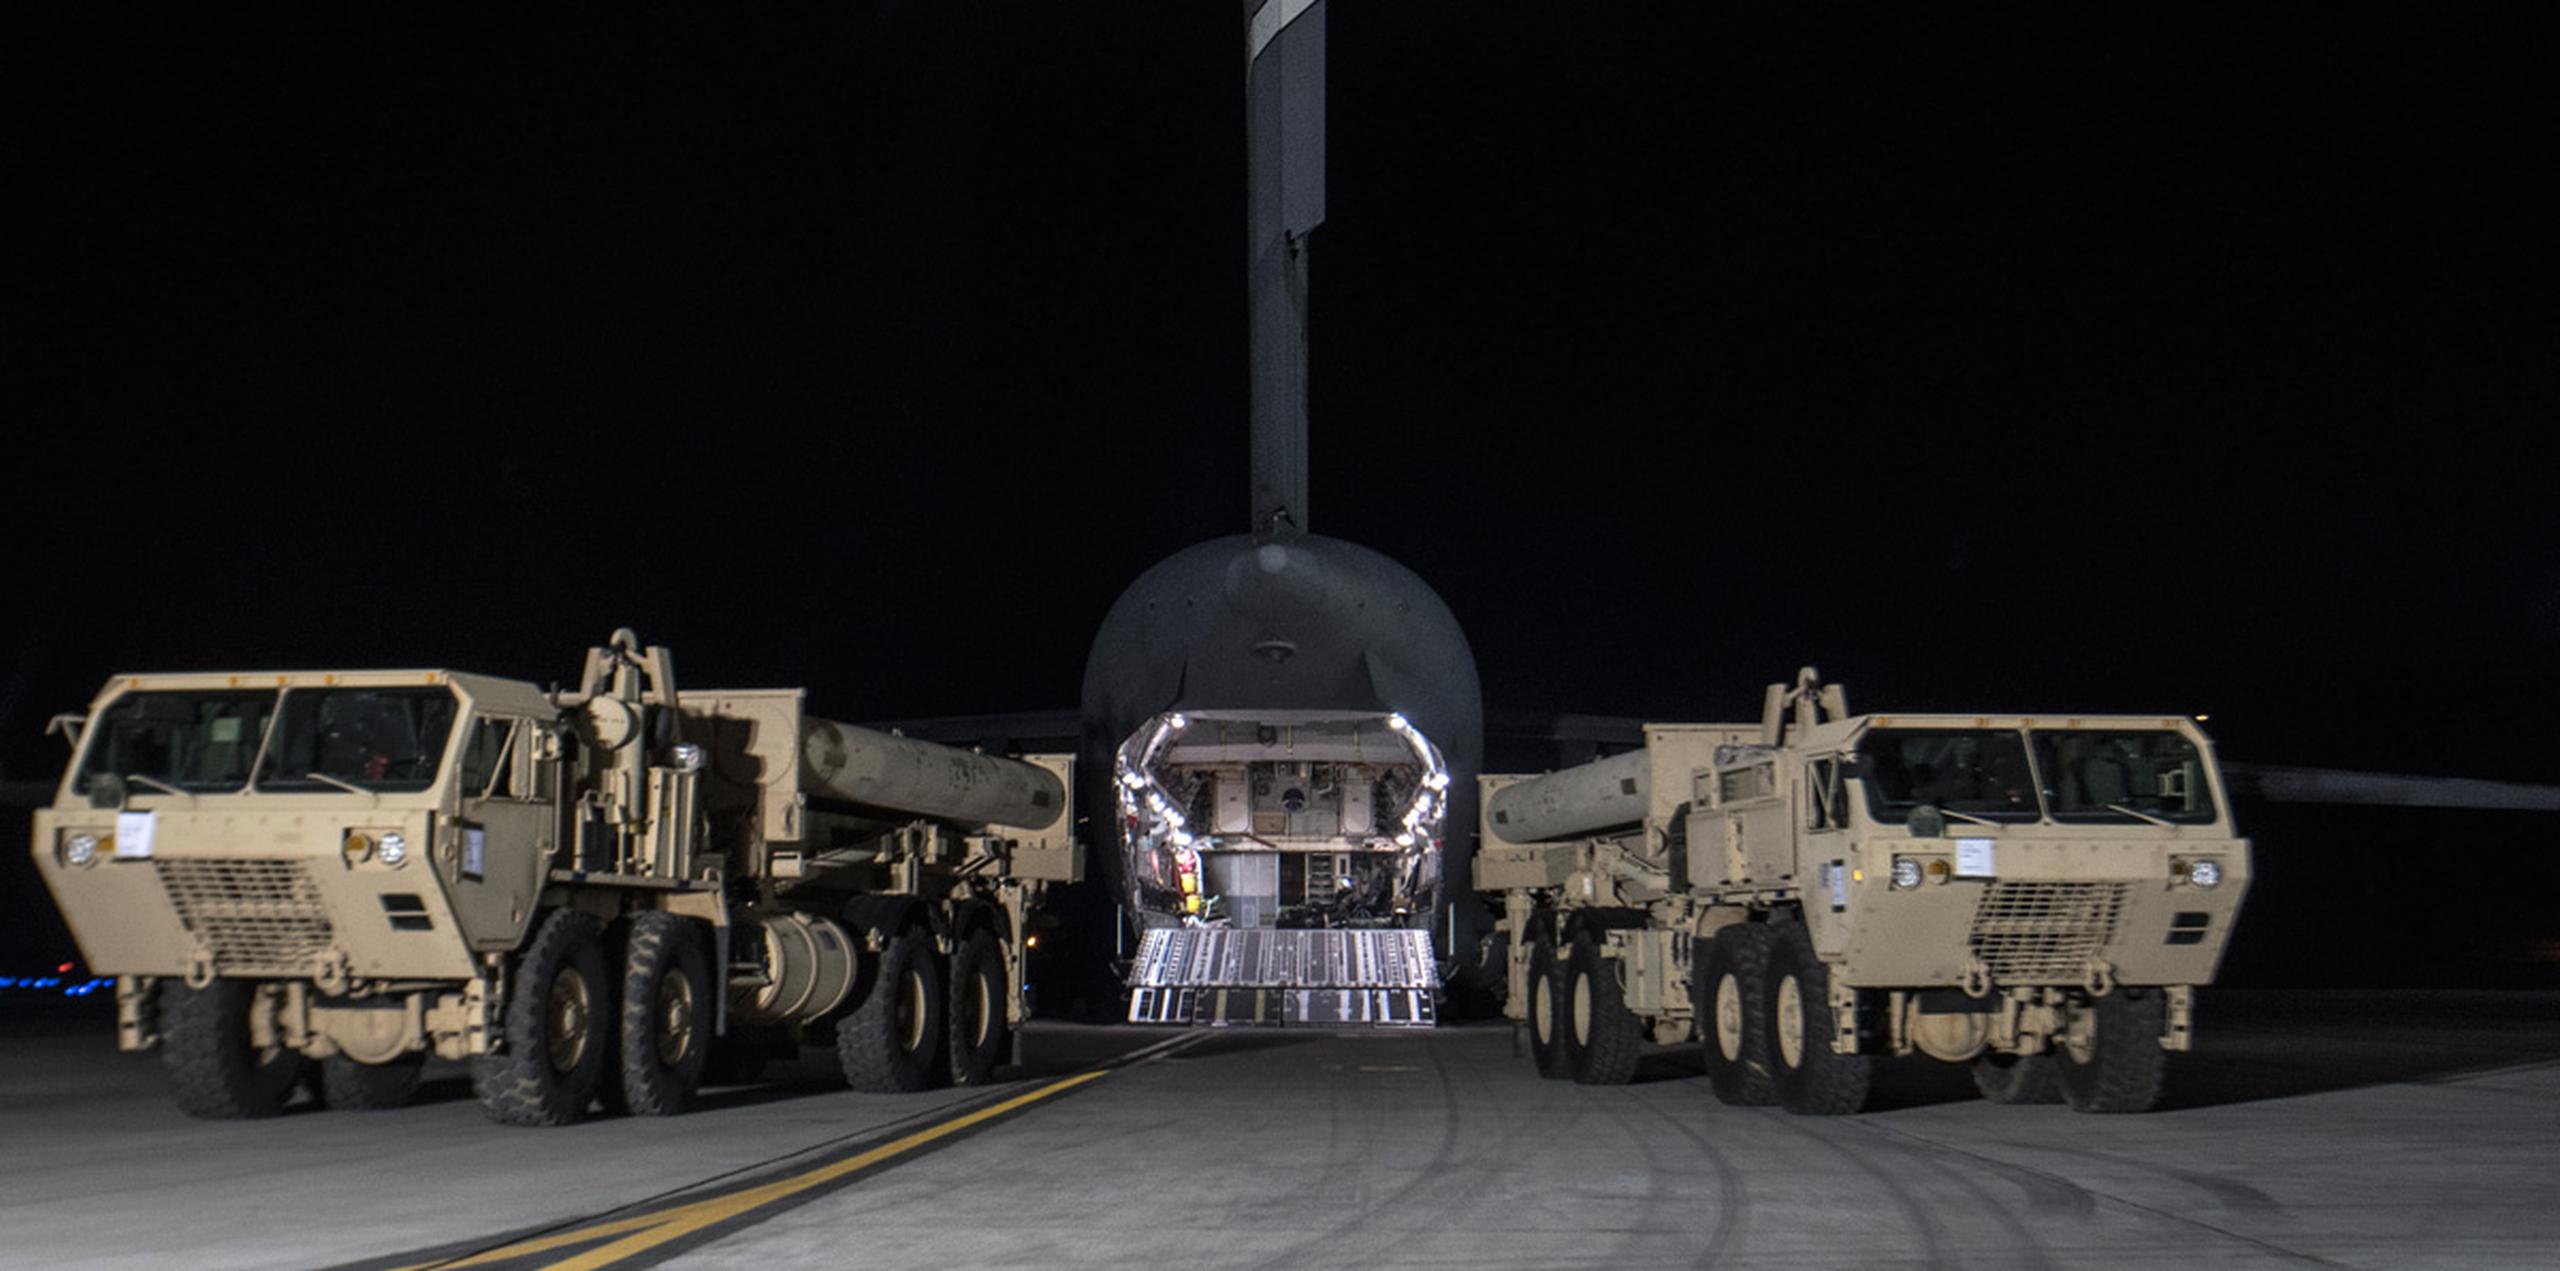 El objetivo del THAAD es interceptar y destruir misiles balísticos de corto y mediano alcance en la etapa final de su recorrido, indicó el ejército estadounidense en un comunicado. (AP)